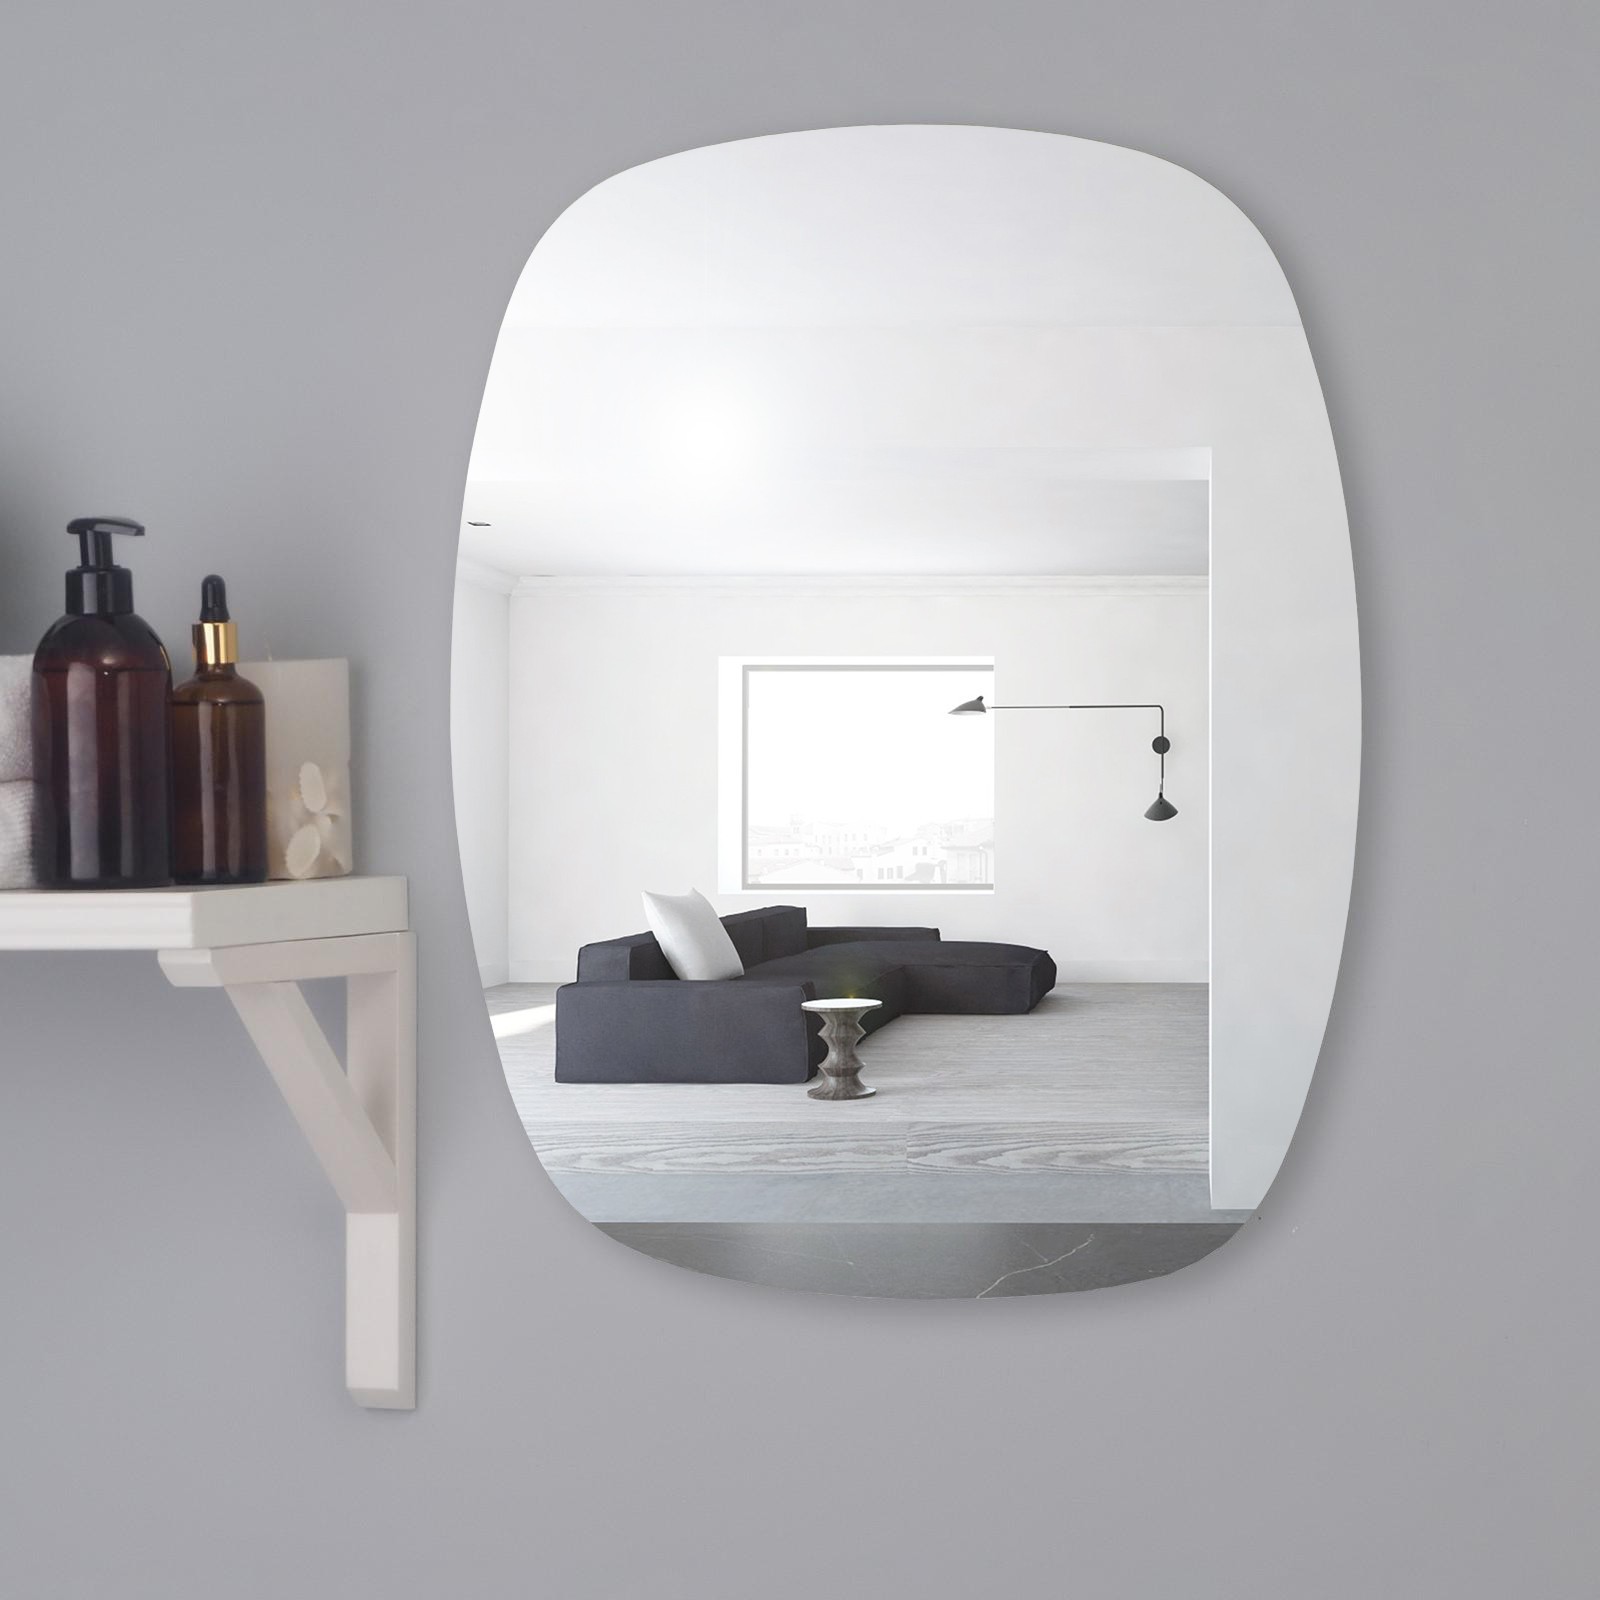 Зеркало Mirox. настенное, 4251805, 50x60 см настенное зеркало настенное зеркало оливия лайт нм 040 49 дуб сонома